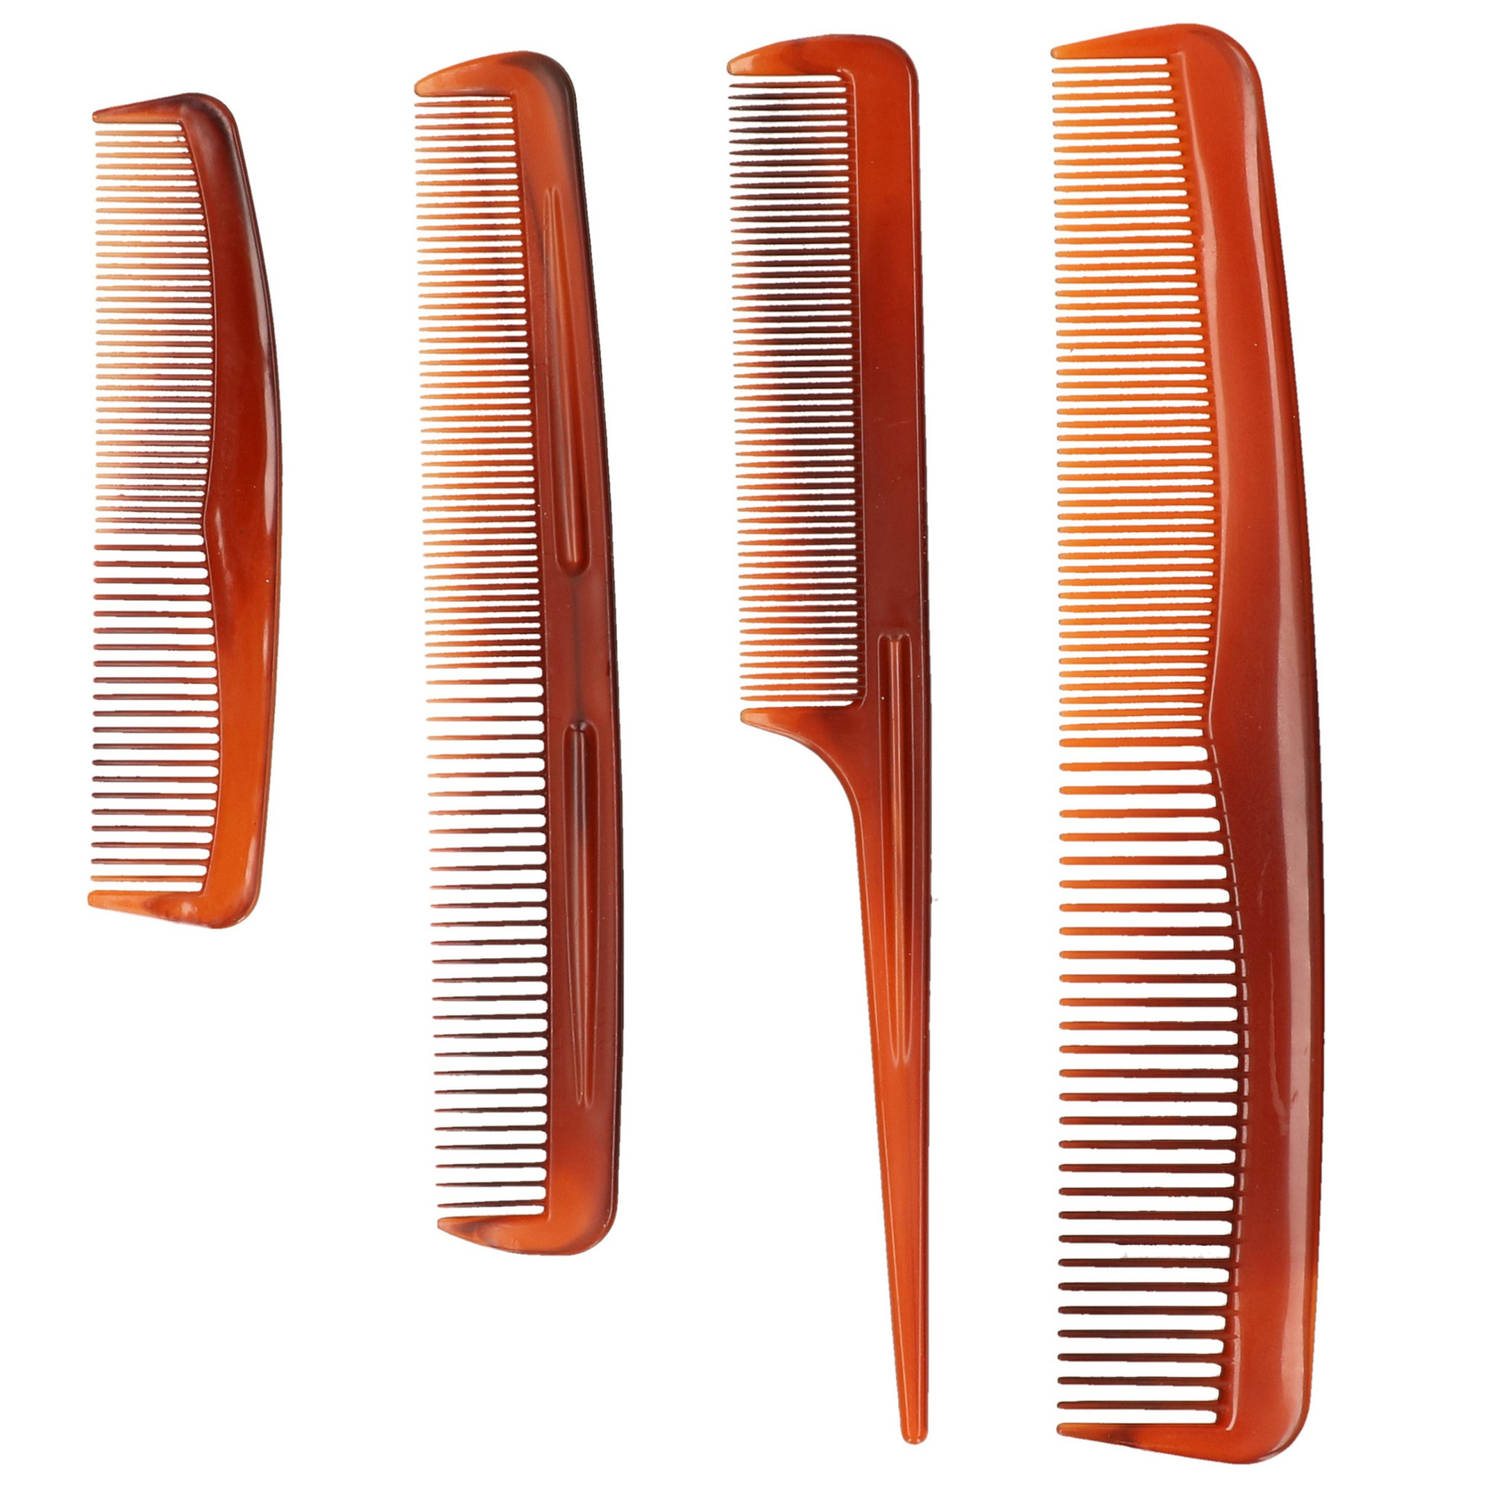 Haarstyling kammen set 4 stuks - Haarborstels